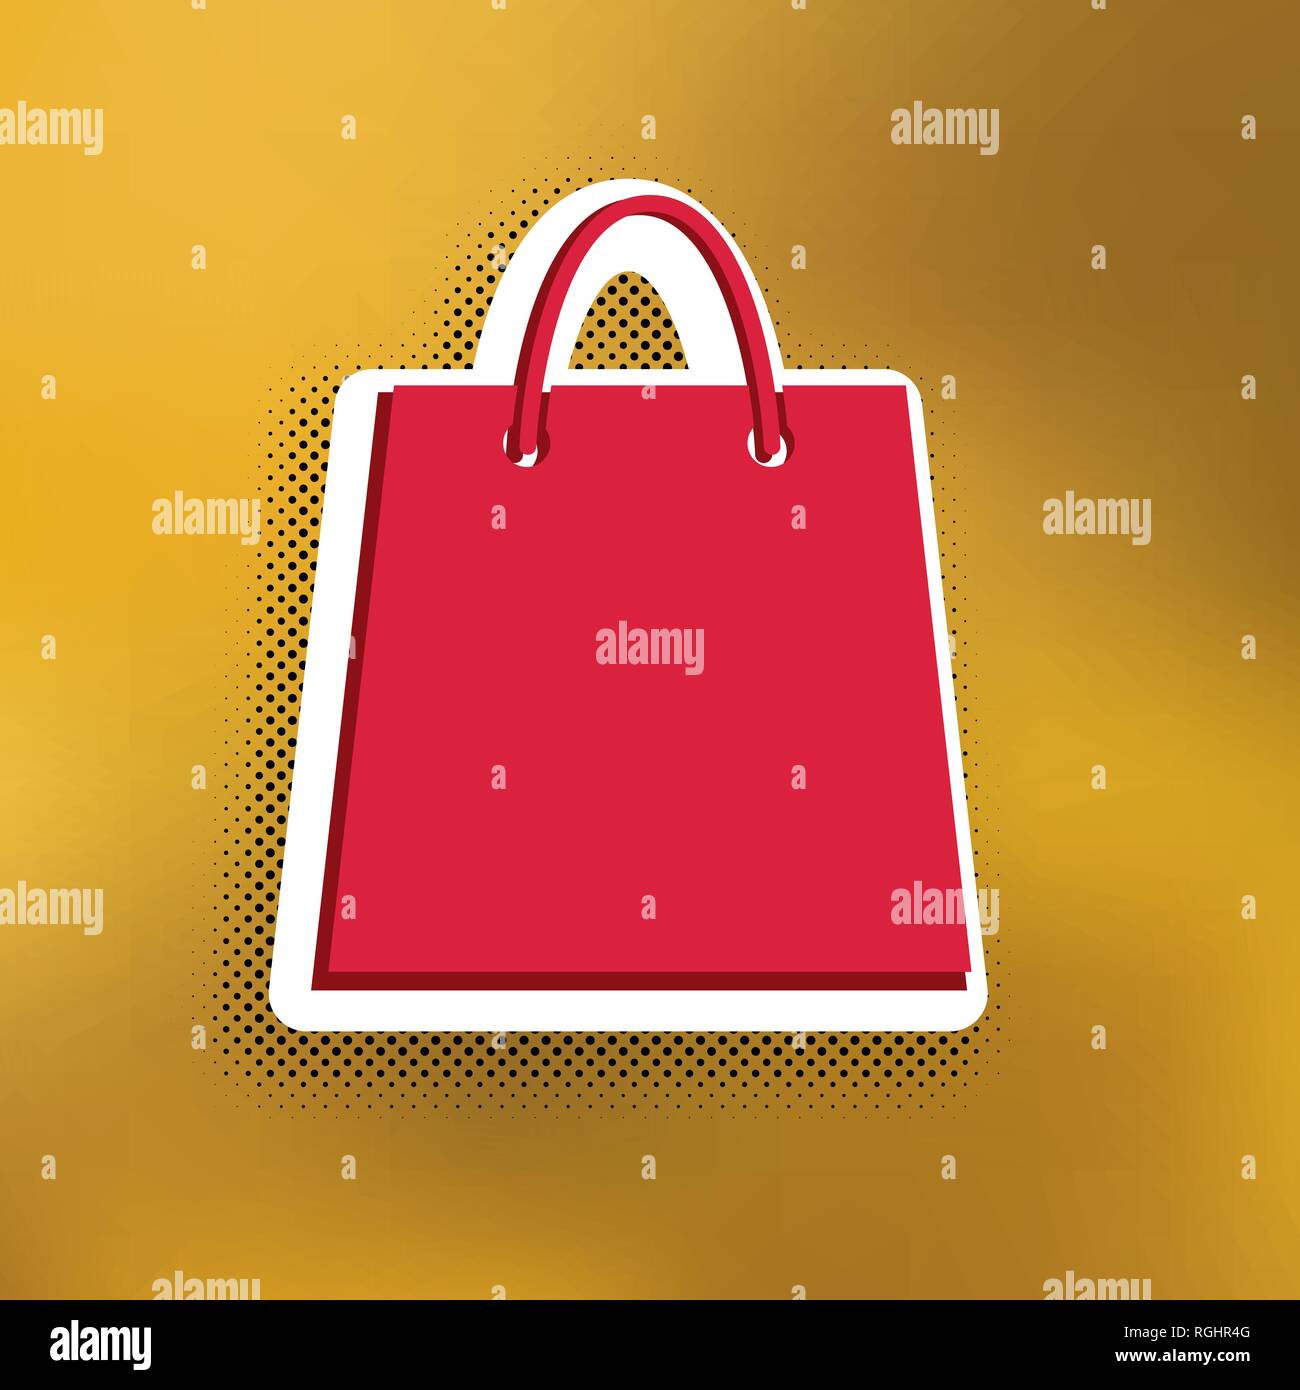 Shopping Bag Abbildung. Vektor. Magenta Symbol mit dunkleren Schatten, weißen Aufkleber und Schwarz popart Schatten auf goldenem Hintergrund. Stock Vektor